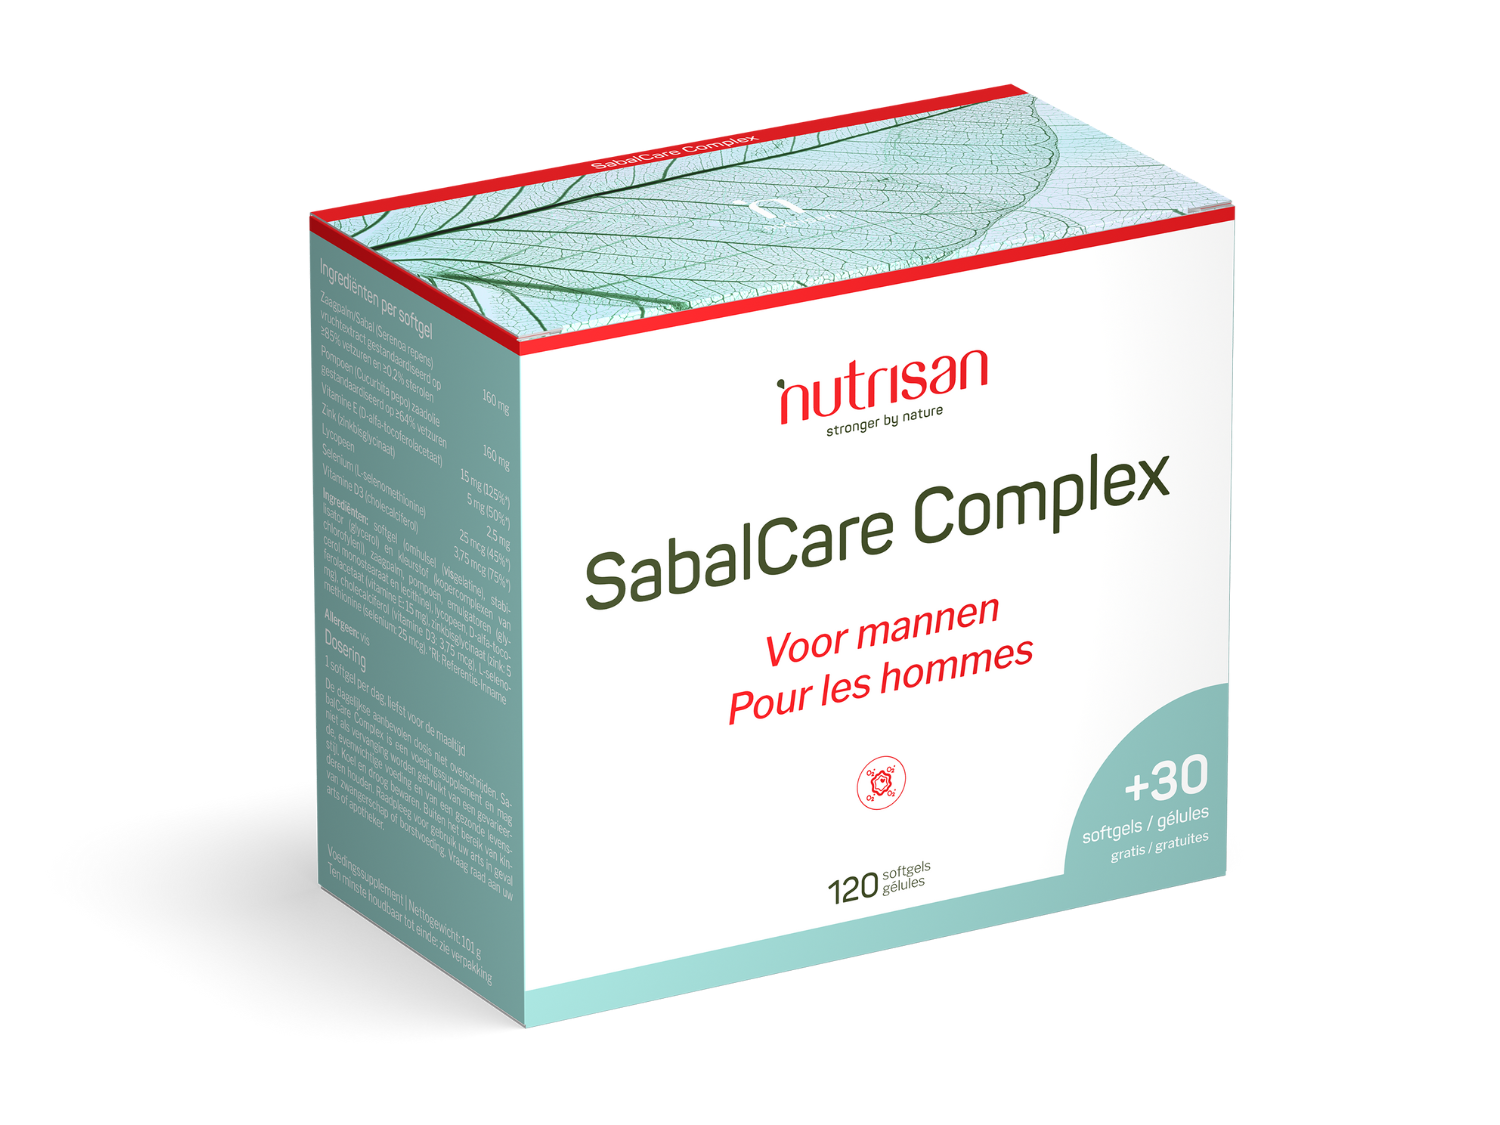 SabalCare Complex - 120 + 30 softgels gratuits